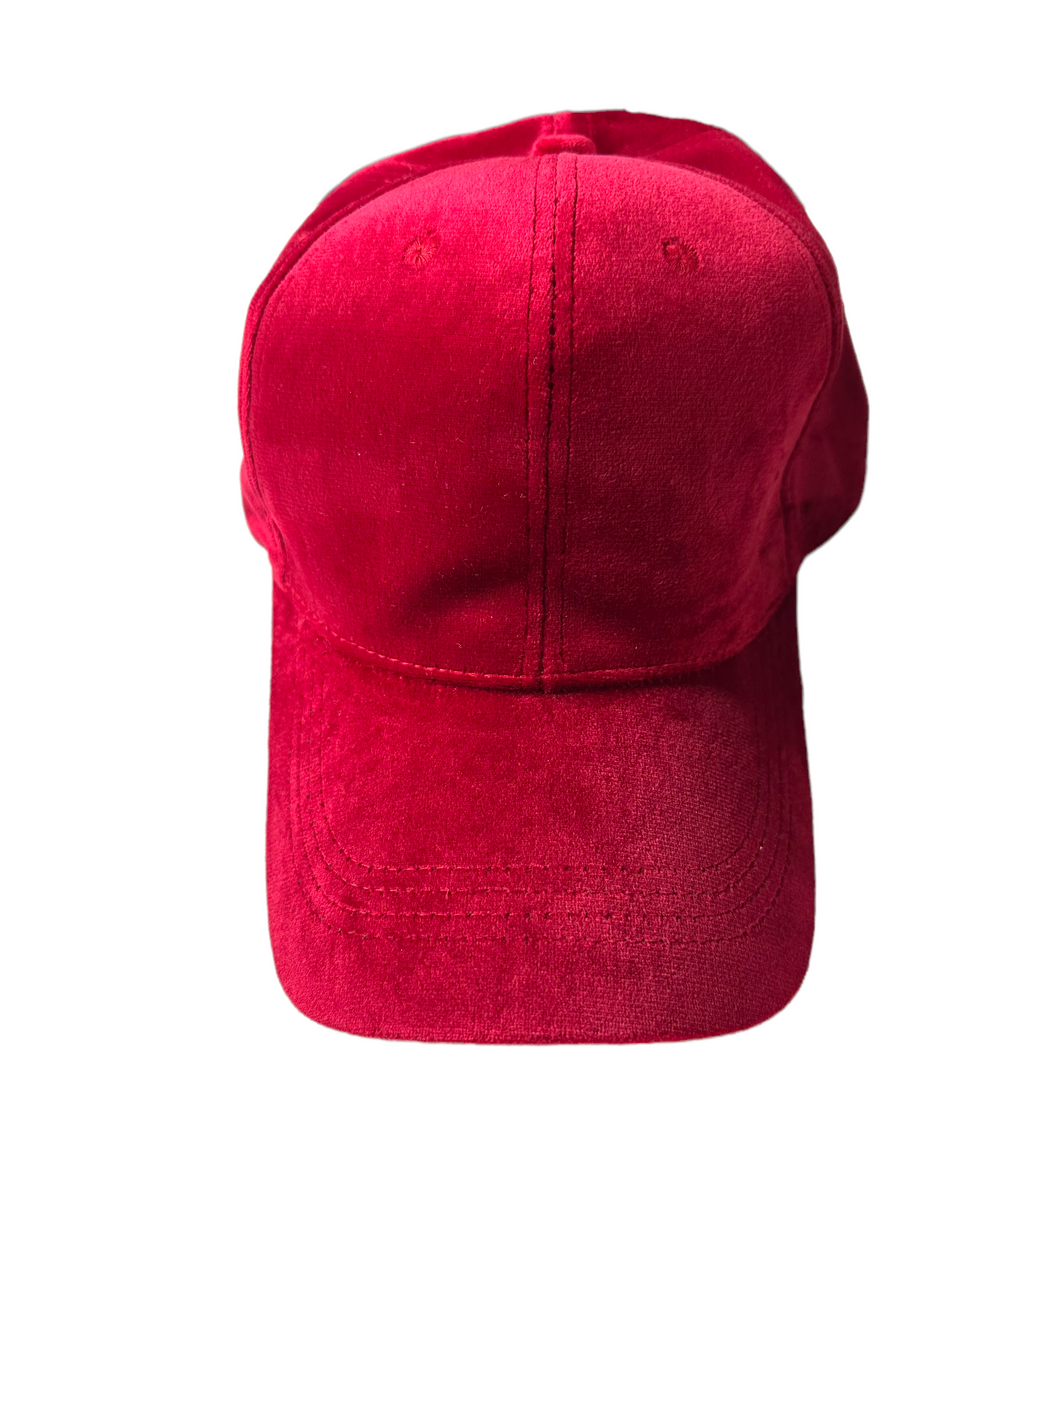 Red Velour Baseball Cap